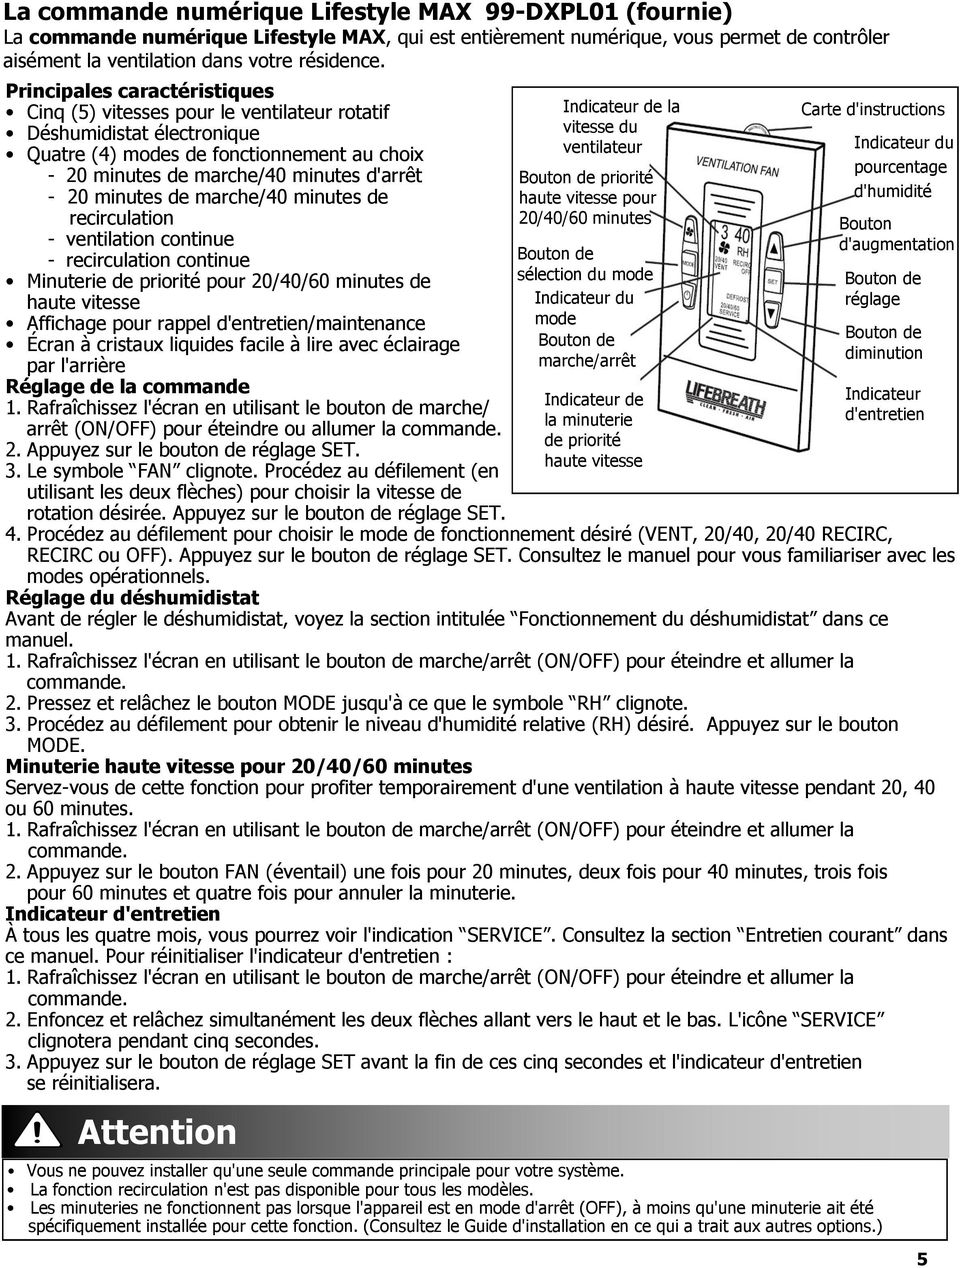 Guide Pour Les Propritaires D Un Appareil De La Srie Max regarding dimensions 960 X 1268